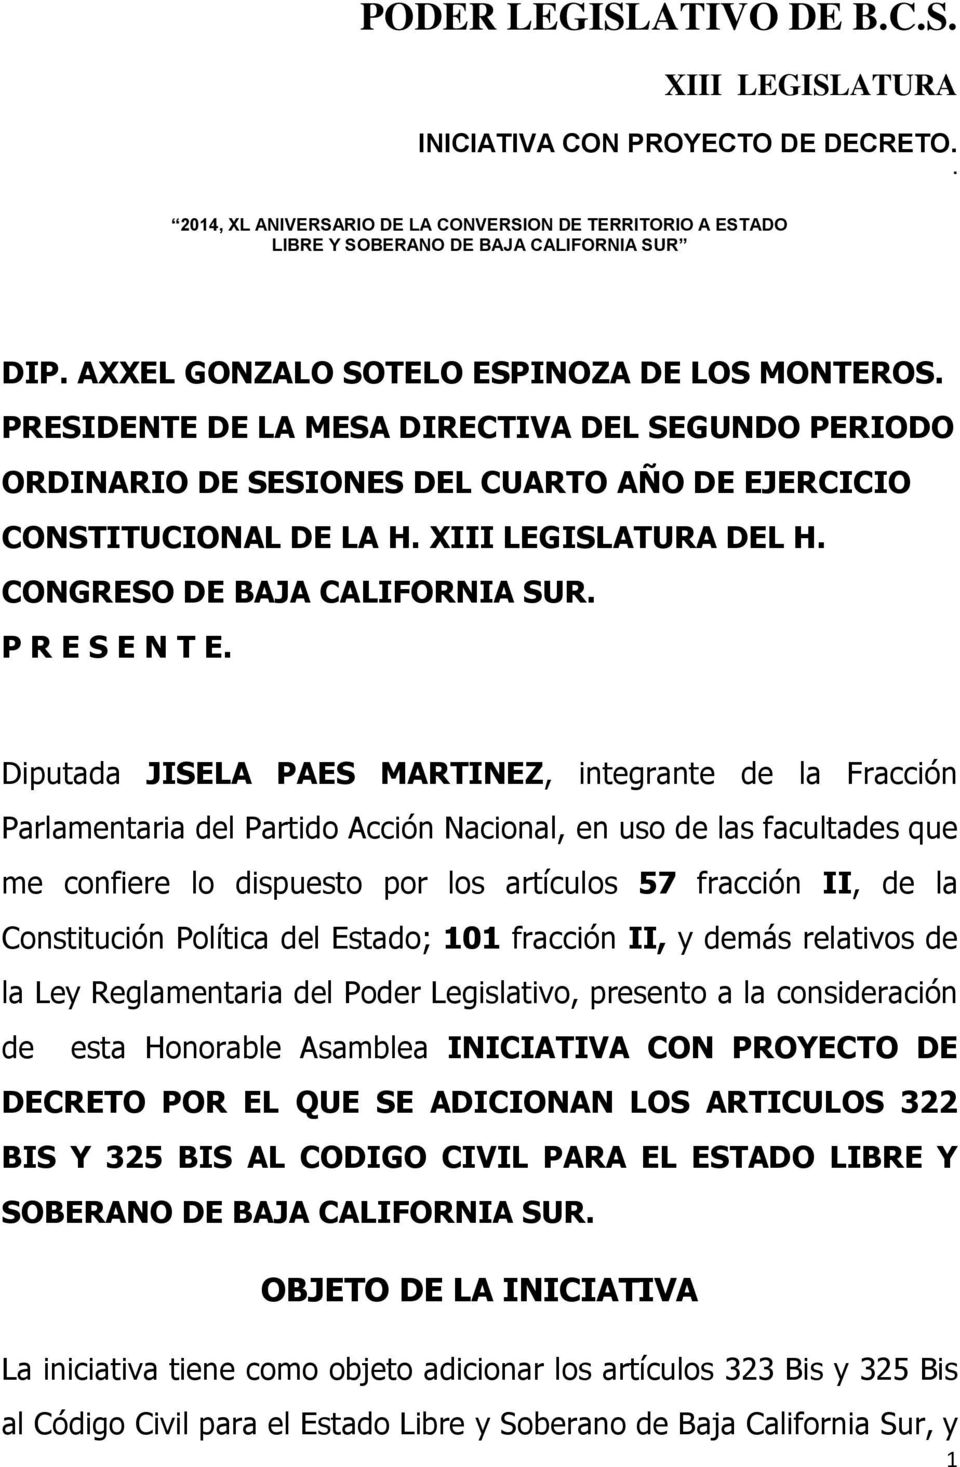 Diputada JISELA PAES MARTINEZ, integrante de la Fracción Parlamentaria del Partido Acción Nacional, en uso de las facultades que me confiere lo dispuesto por los artículos 57 fracción II, de la